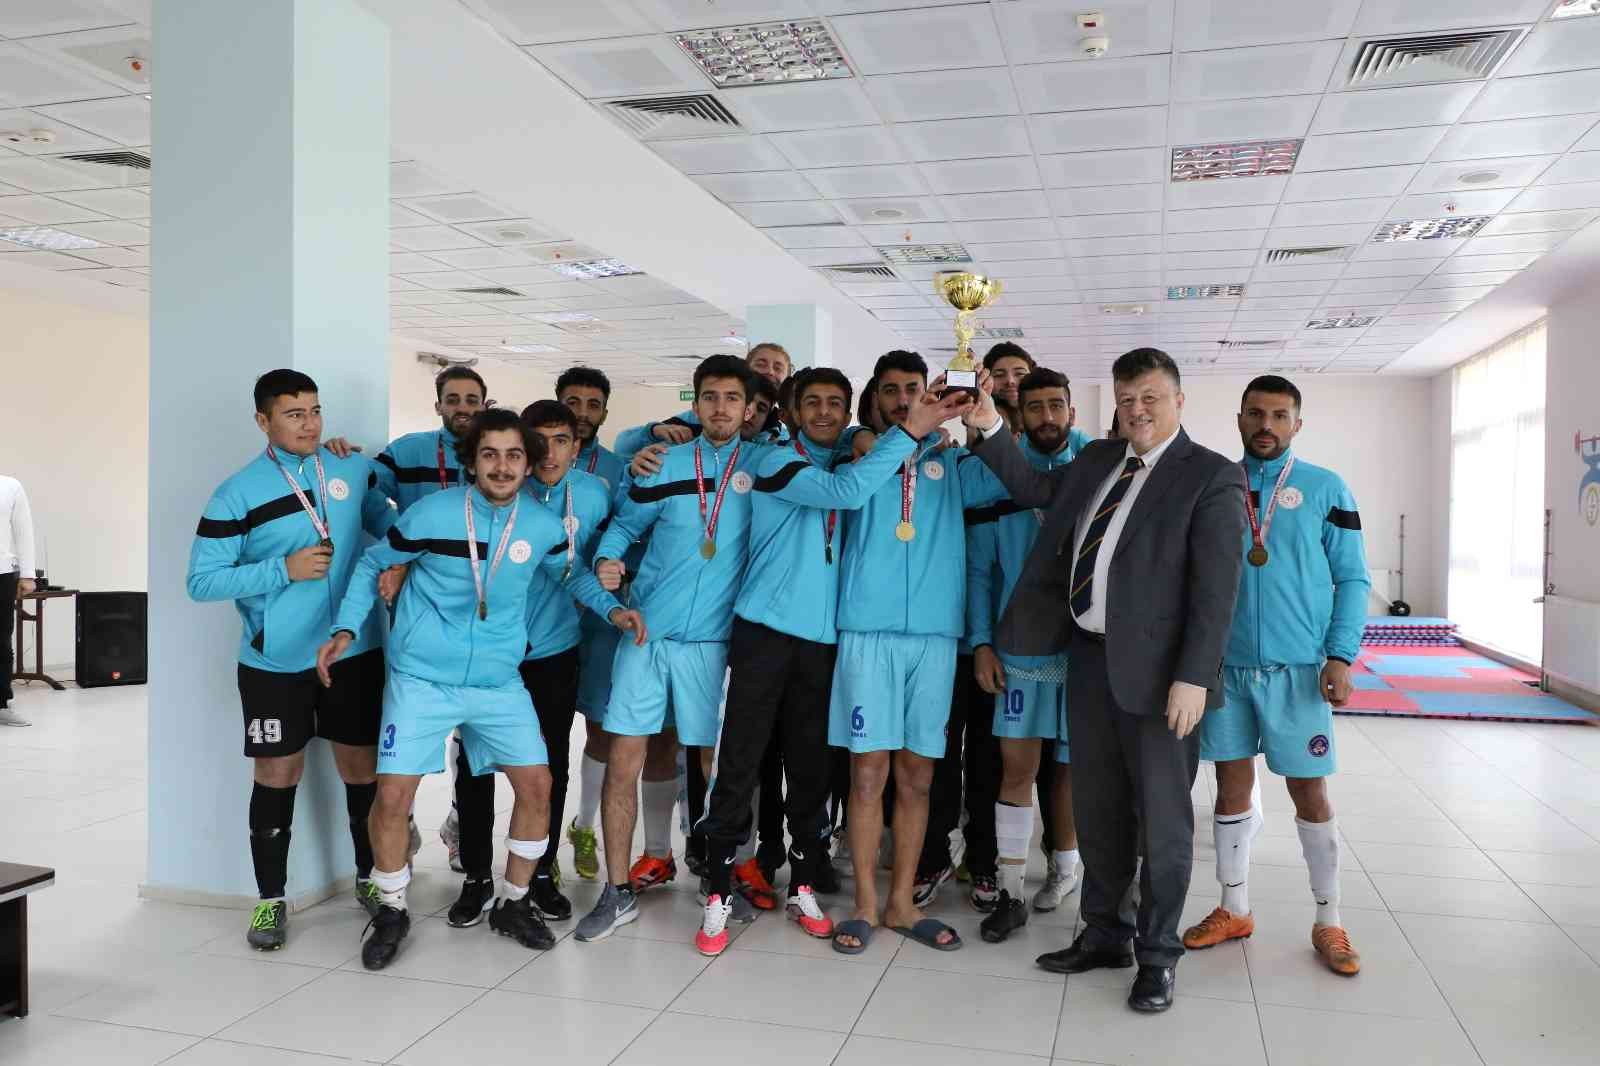 Aydın’da Yurtlar Arası Futbol Turnuvası sona erdi #aydin